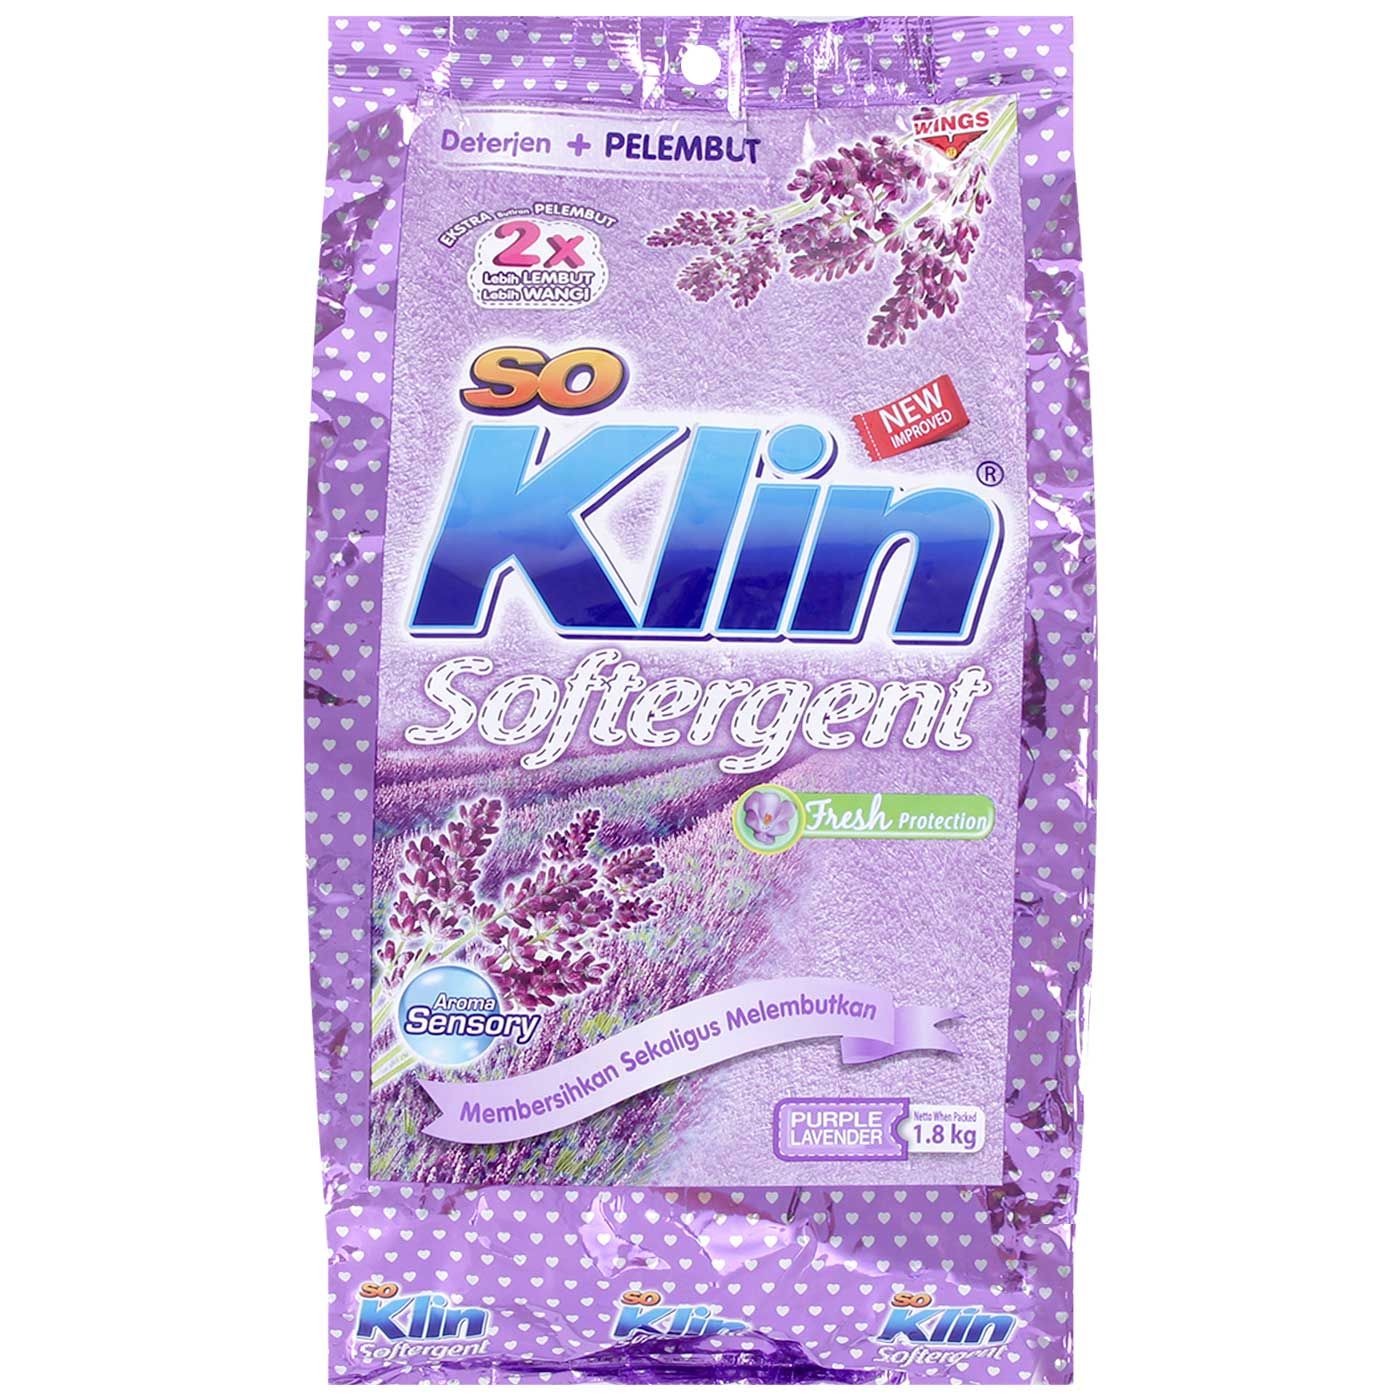 So Klin Powdet Softergent Purple Bag 1.8kg - 1